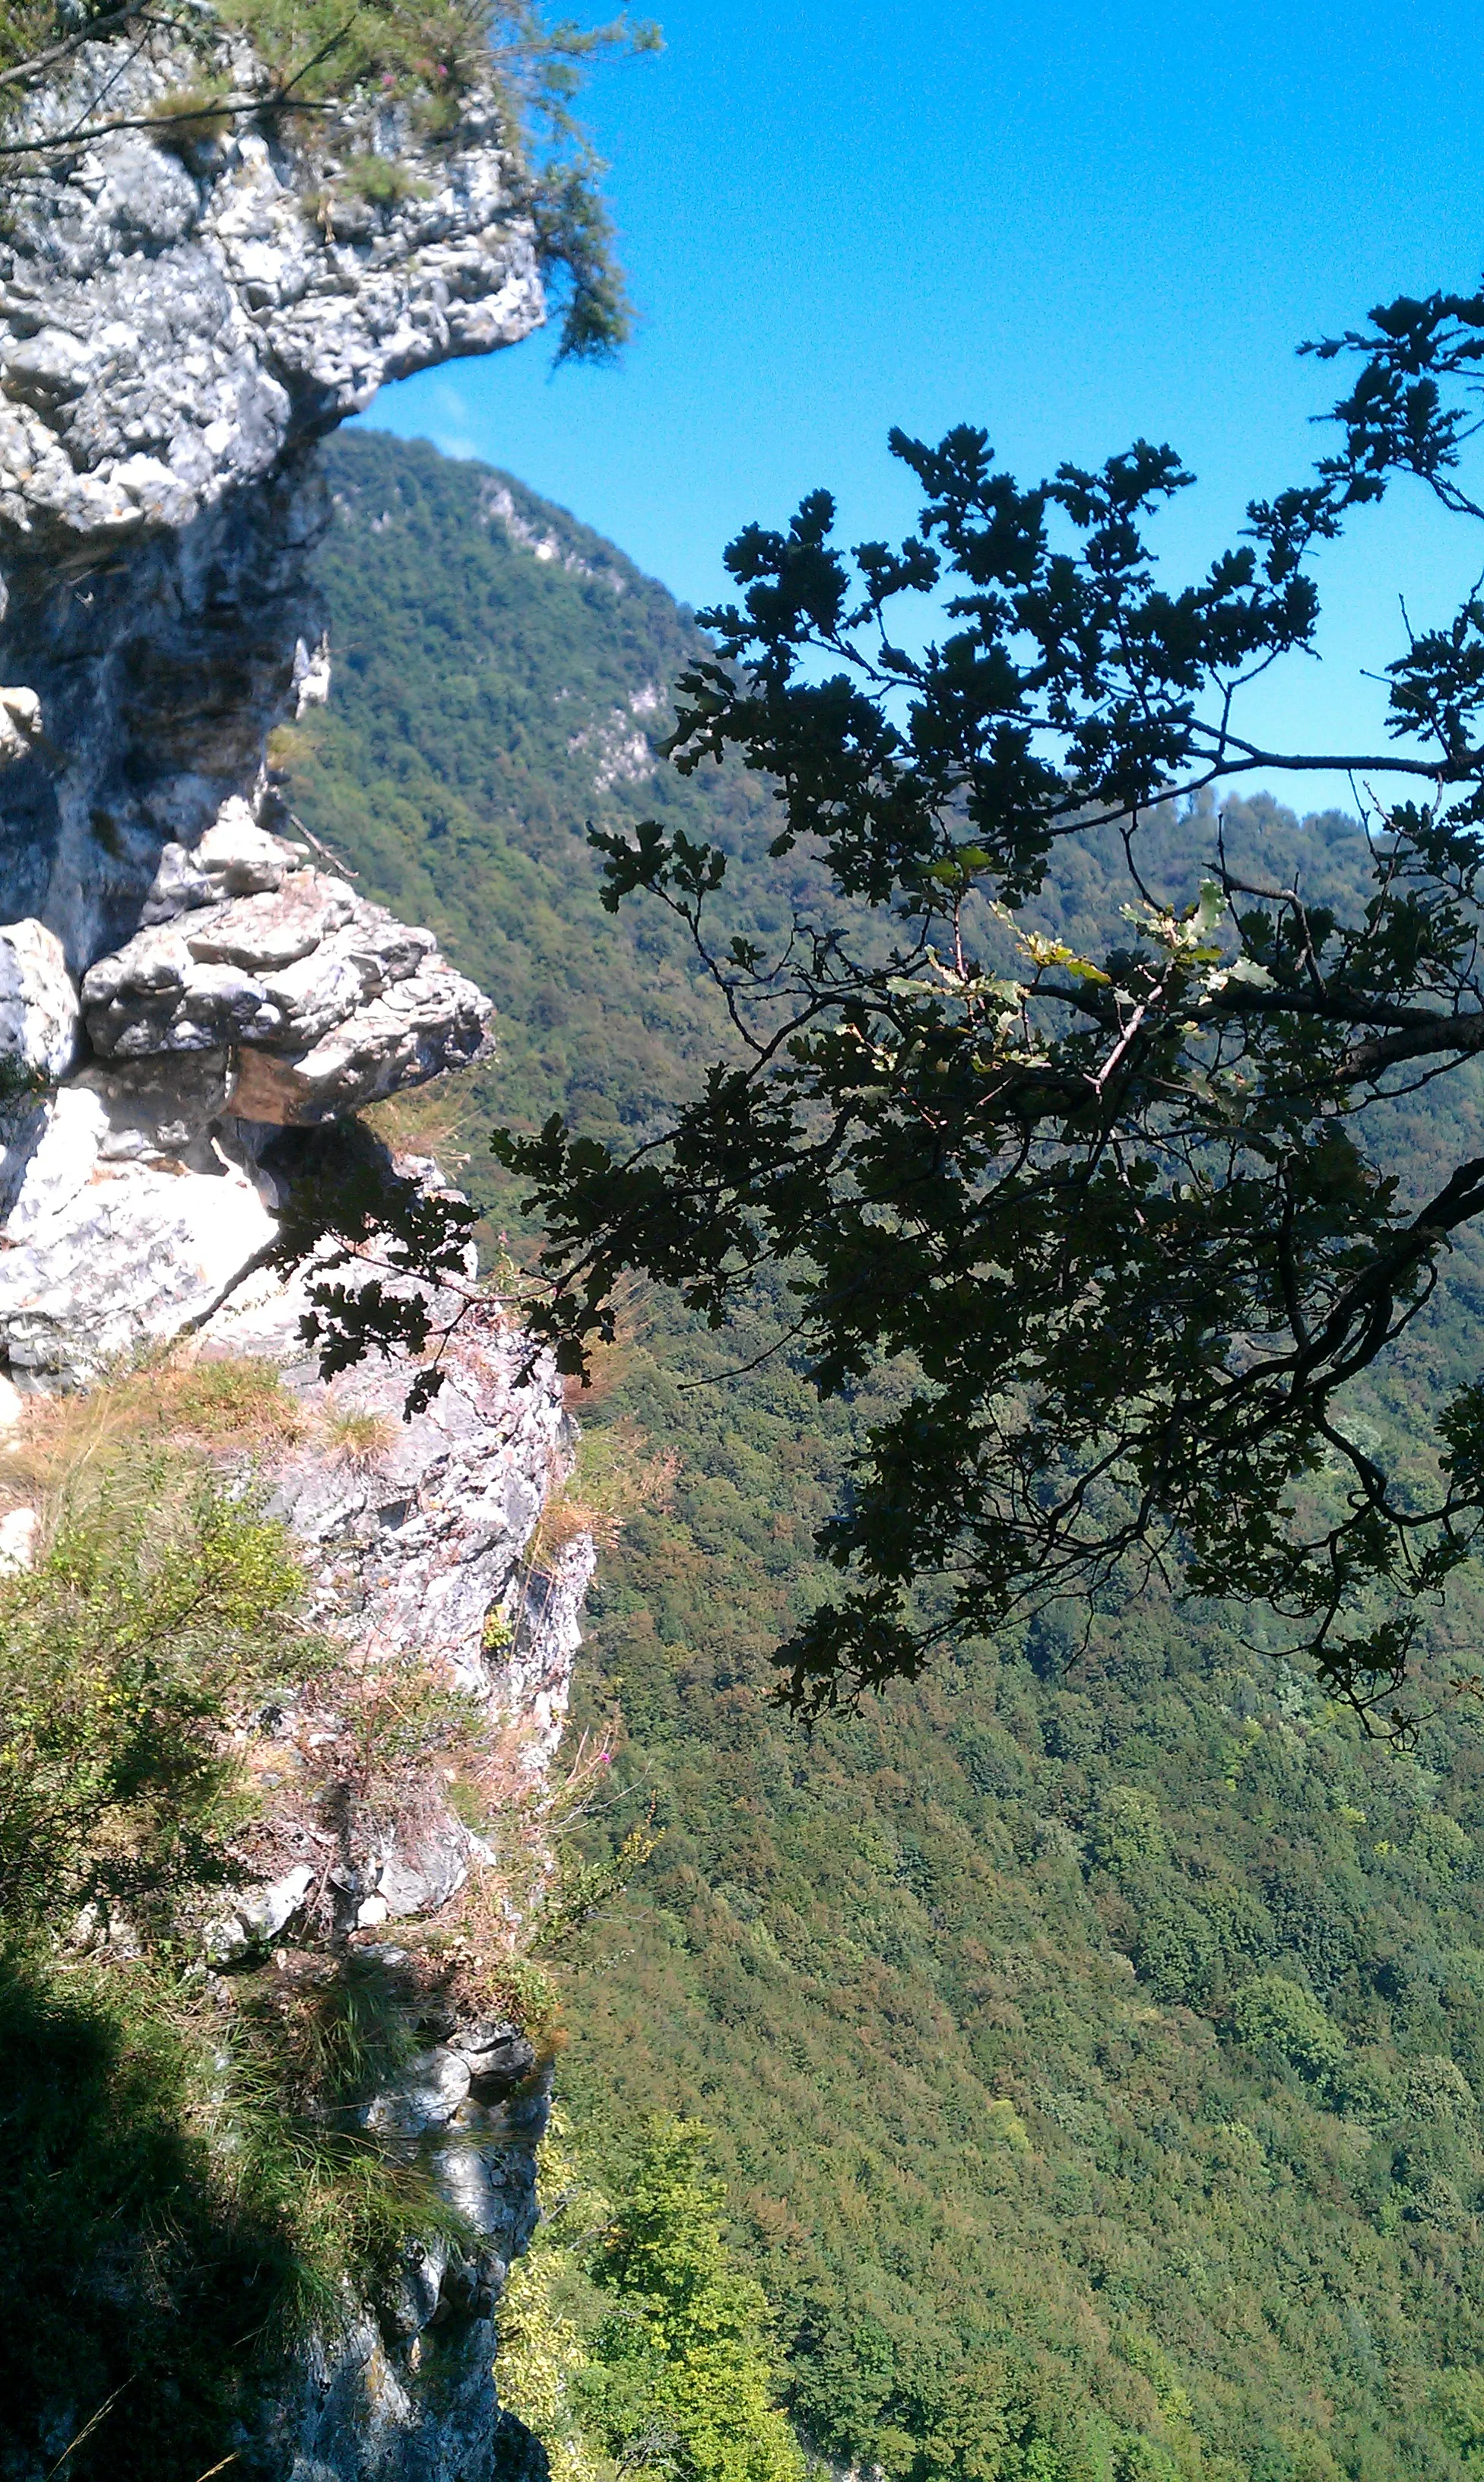 Photo showing: Le rocce del fianco spaccato del monte Crocino, ad Arcisate in provincia di Varese.